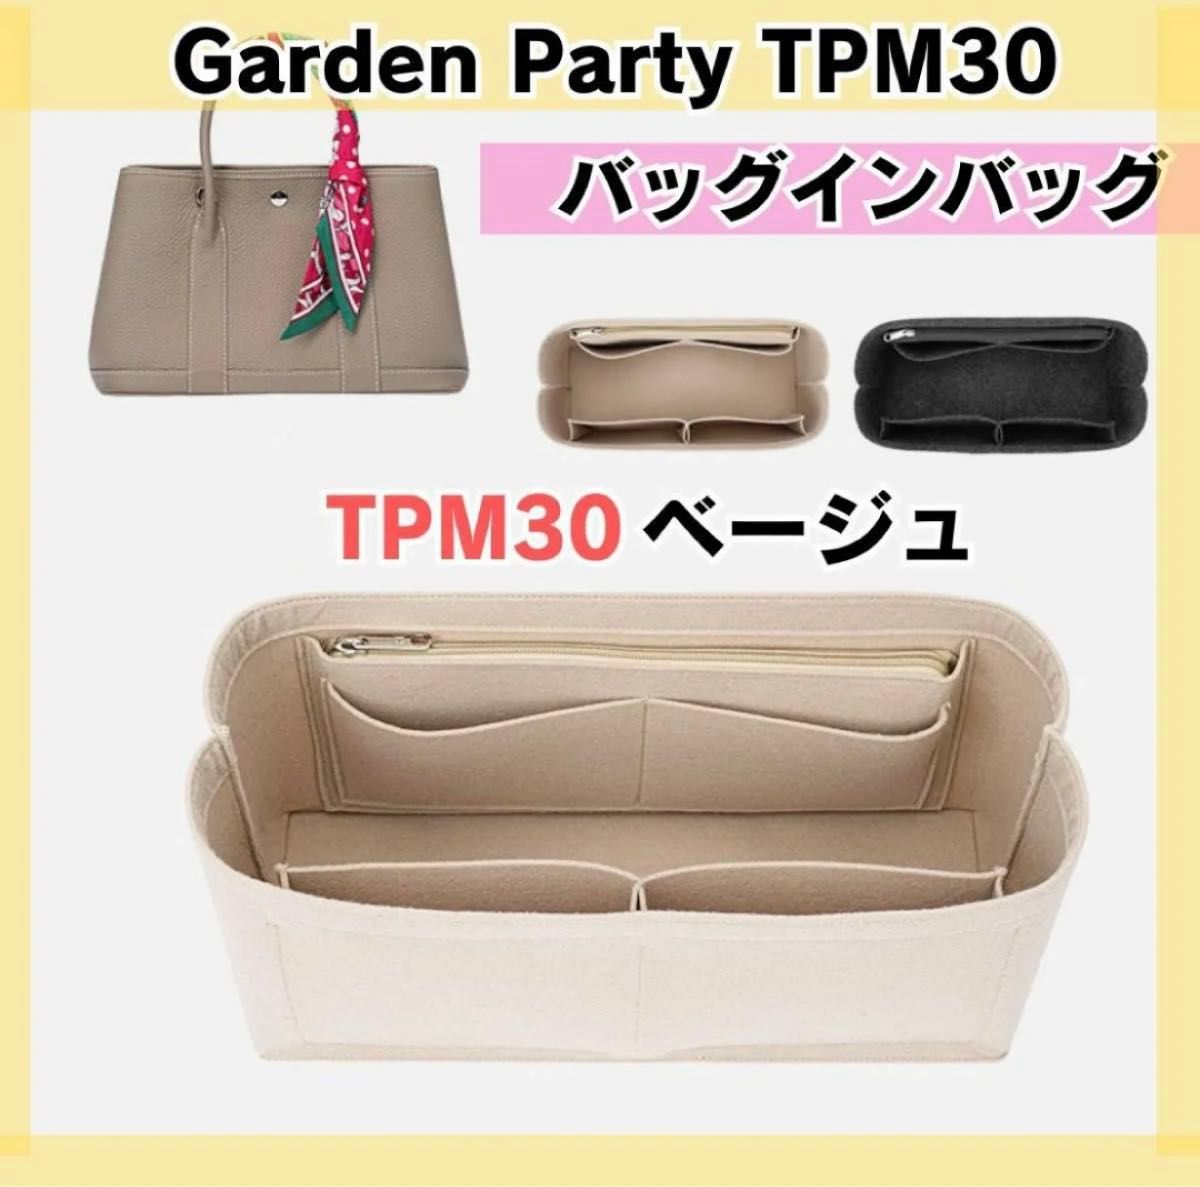 ガーデンパーティ インナーバッグ バッグインバッグ ベージュ30 TPM